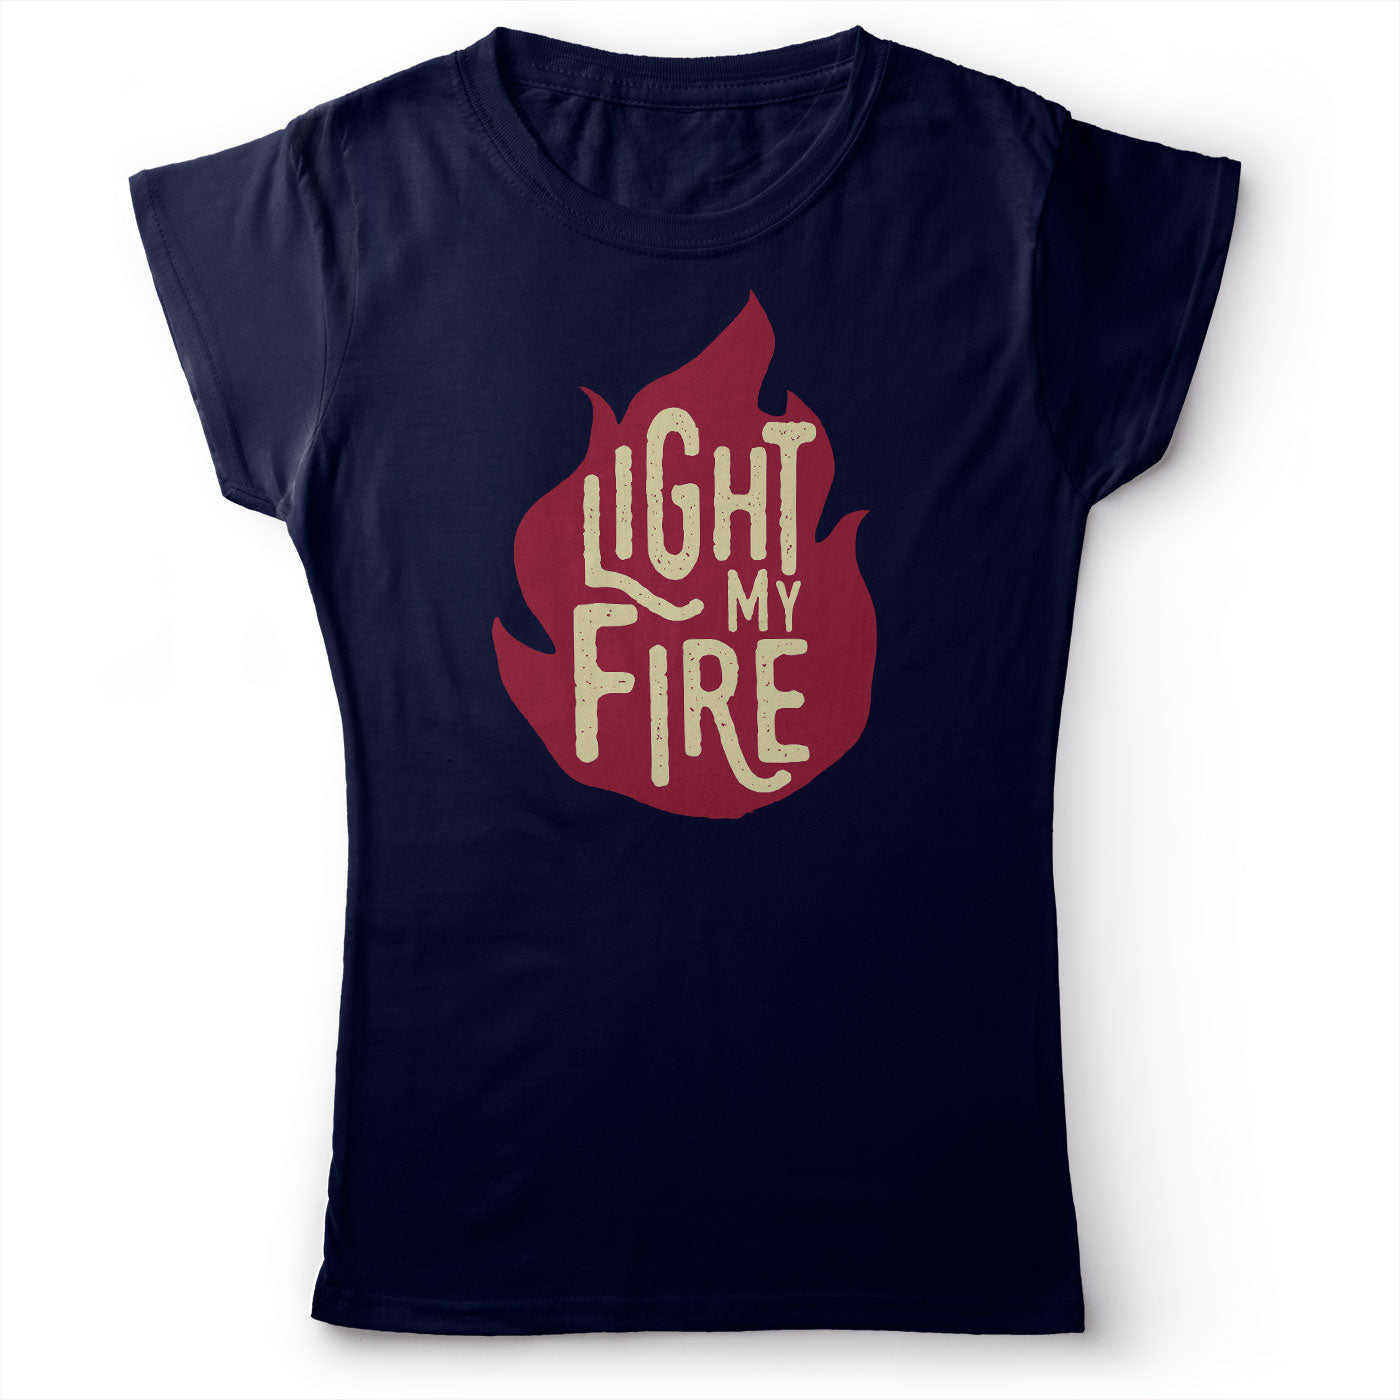 The Doors - Light My Fire - Women's T-Shirt Navy Blue 2